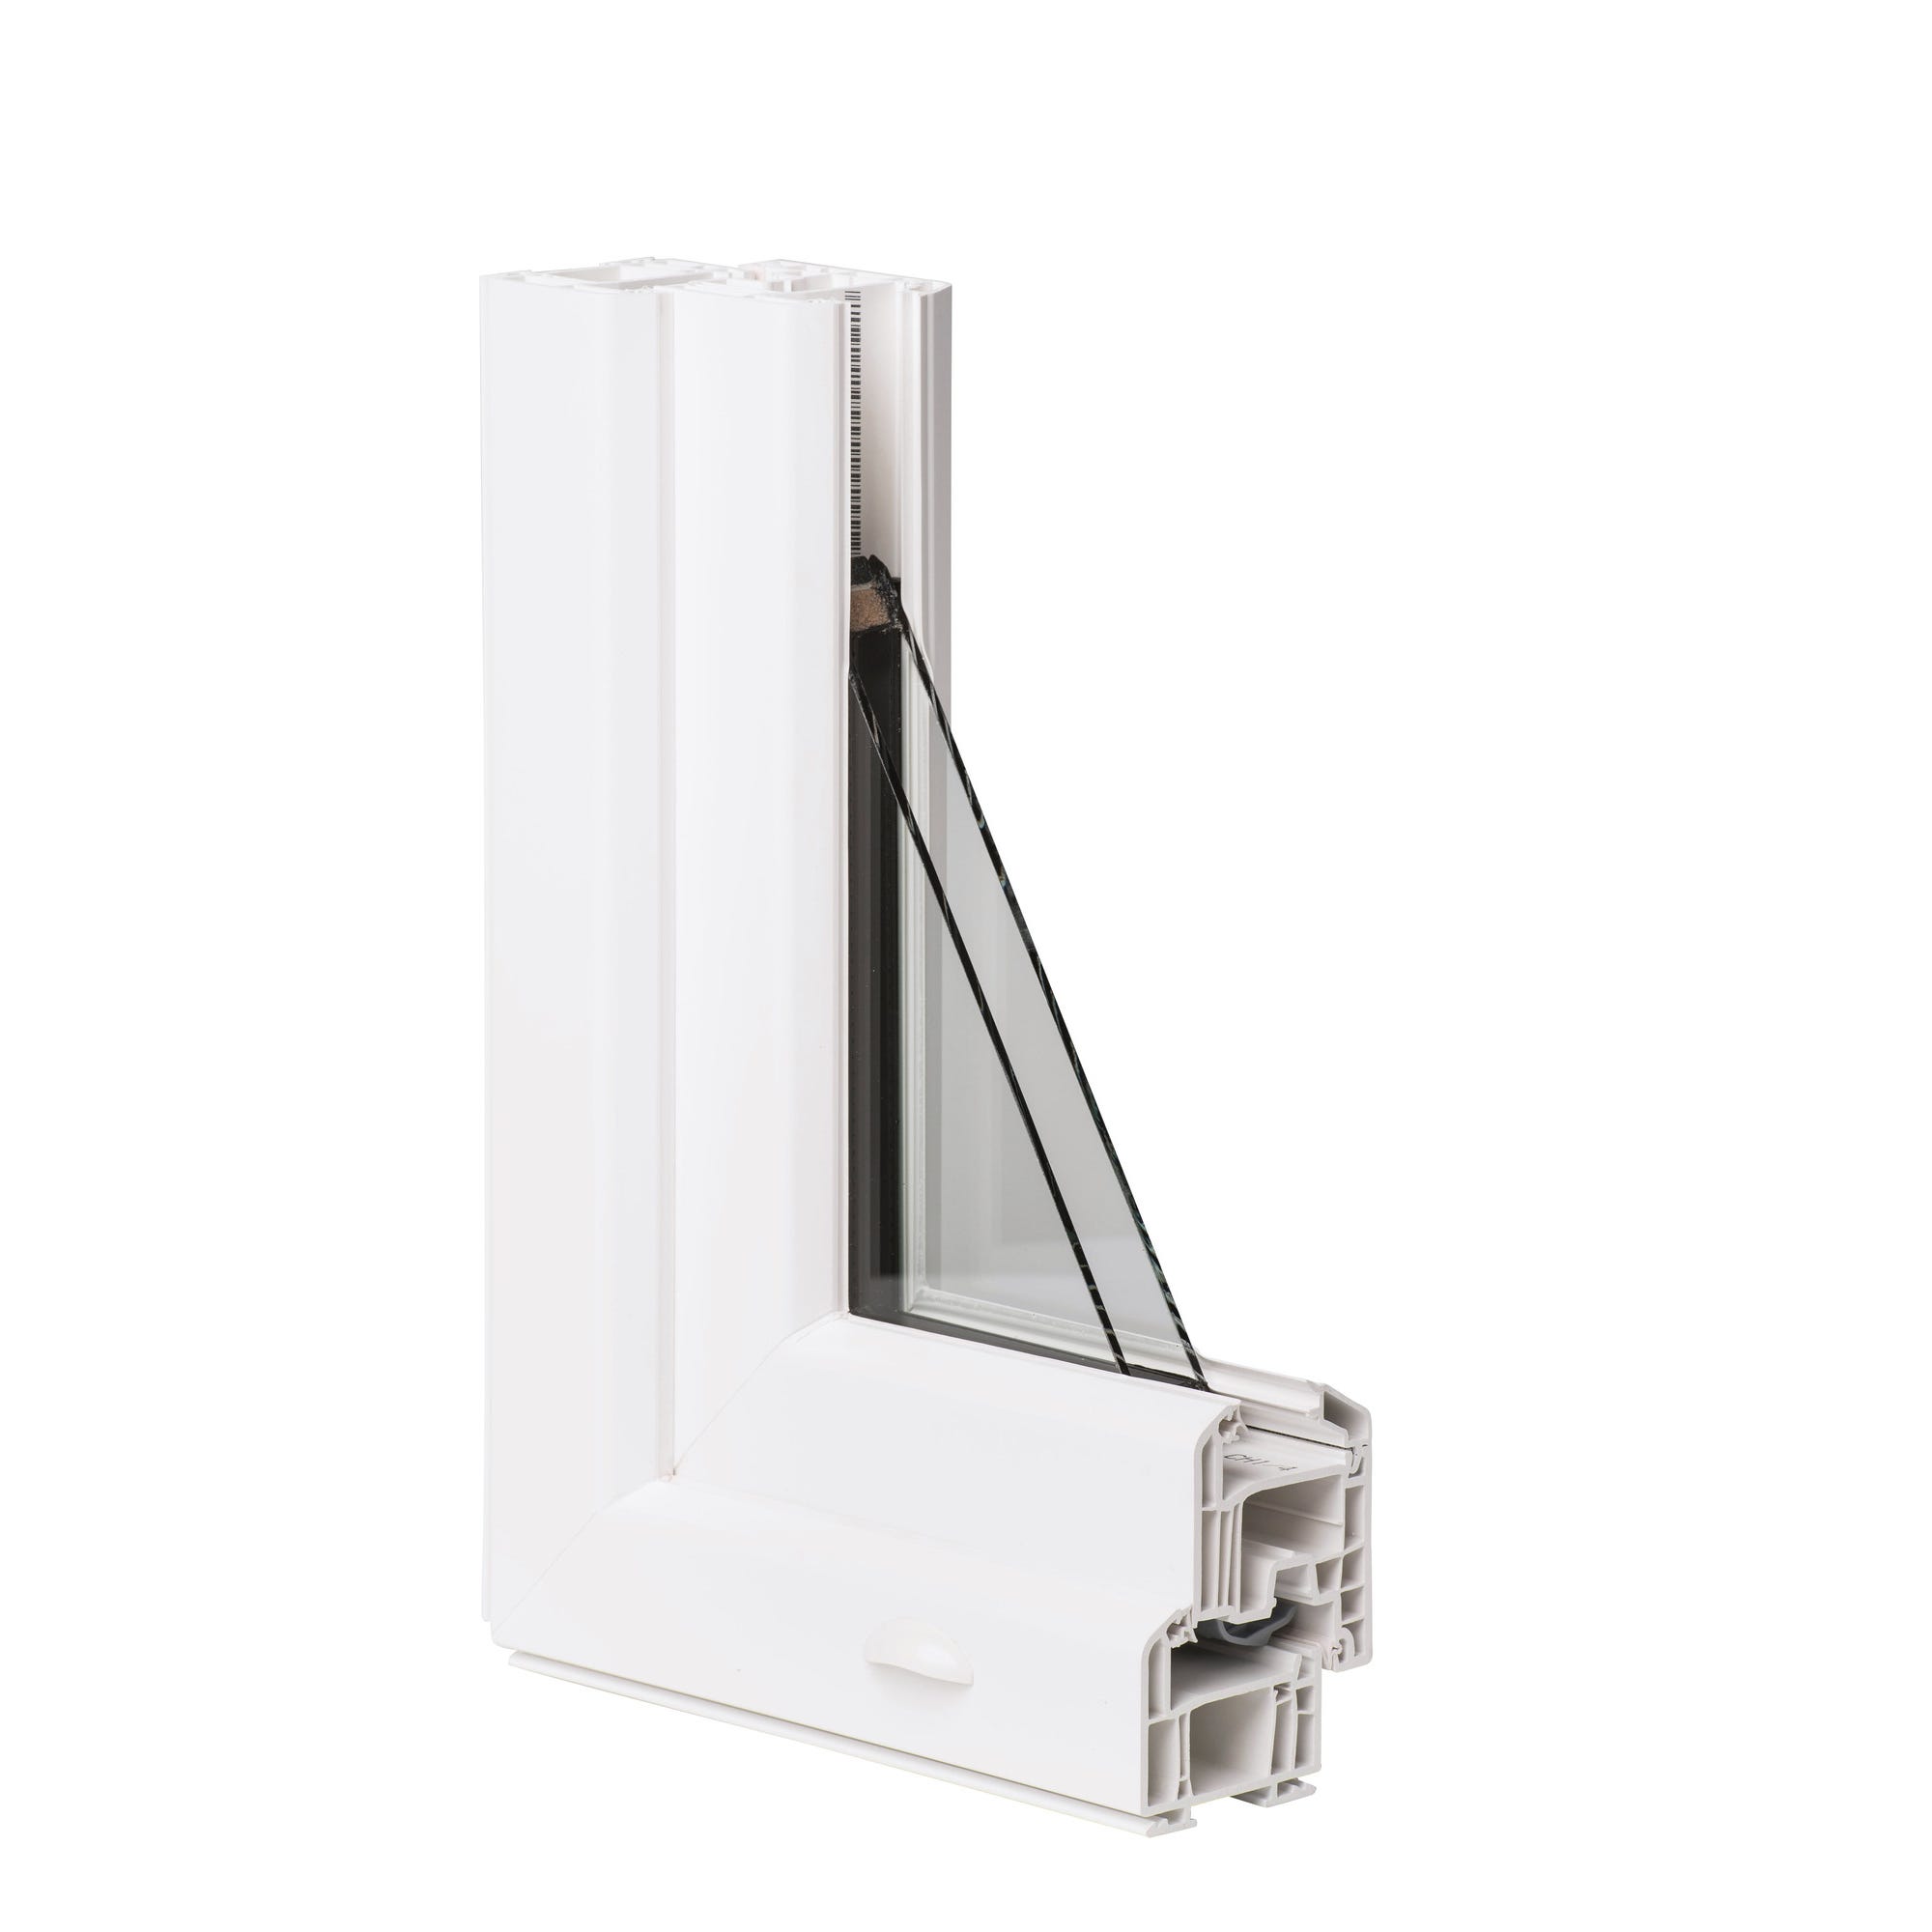 Fenêtre PVC H.145 x l.140 cm oscillo-battant 2 vantaux blanc 3